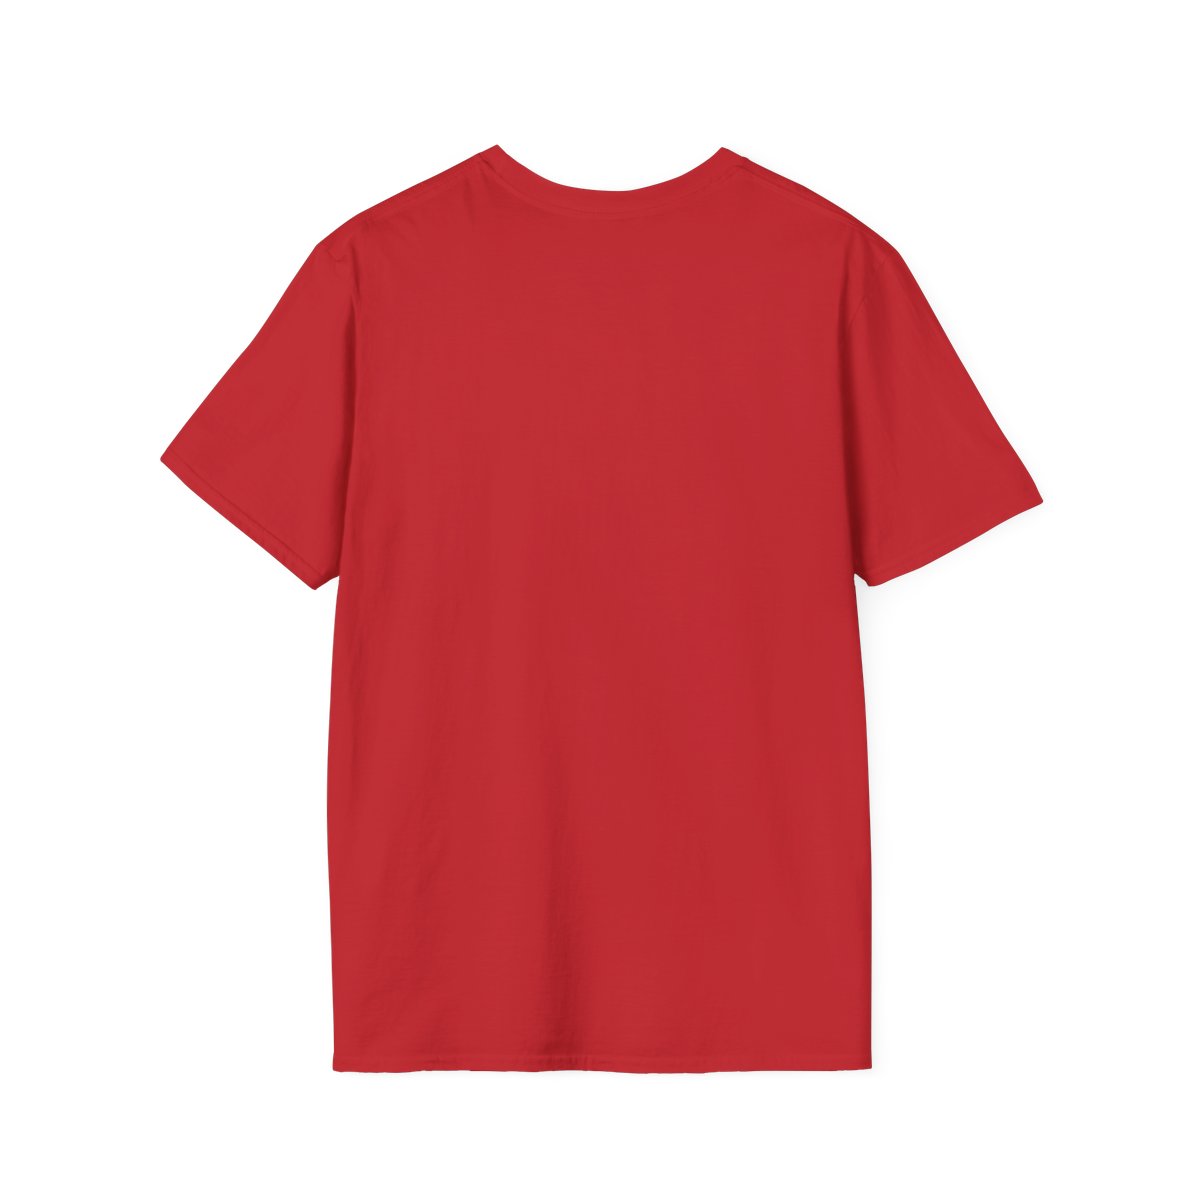 Unisex Softstyle T-Shirt Circle Logo 5 colors product thumbnail image